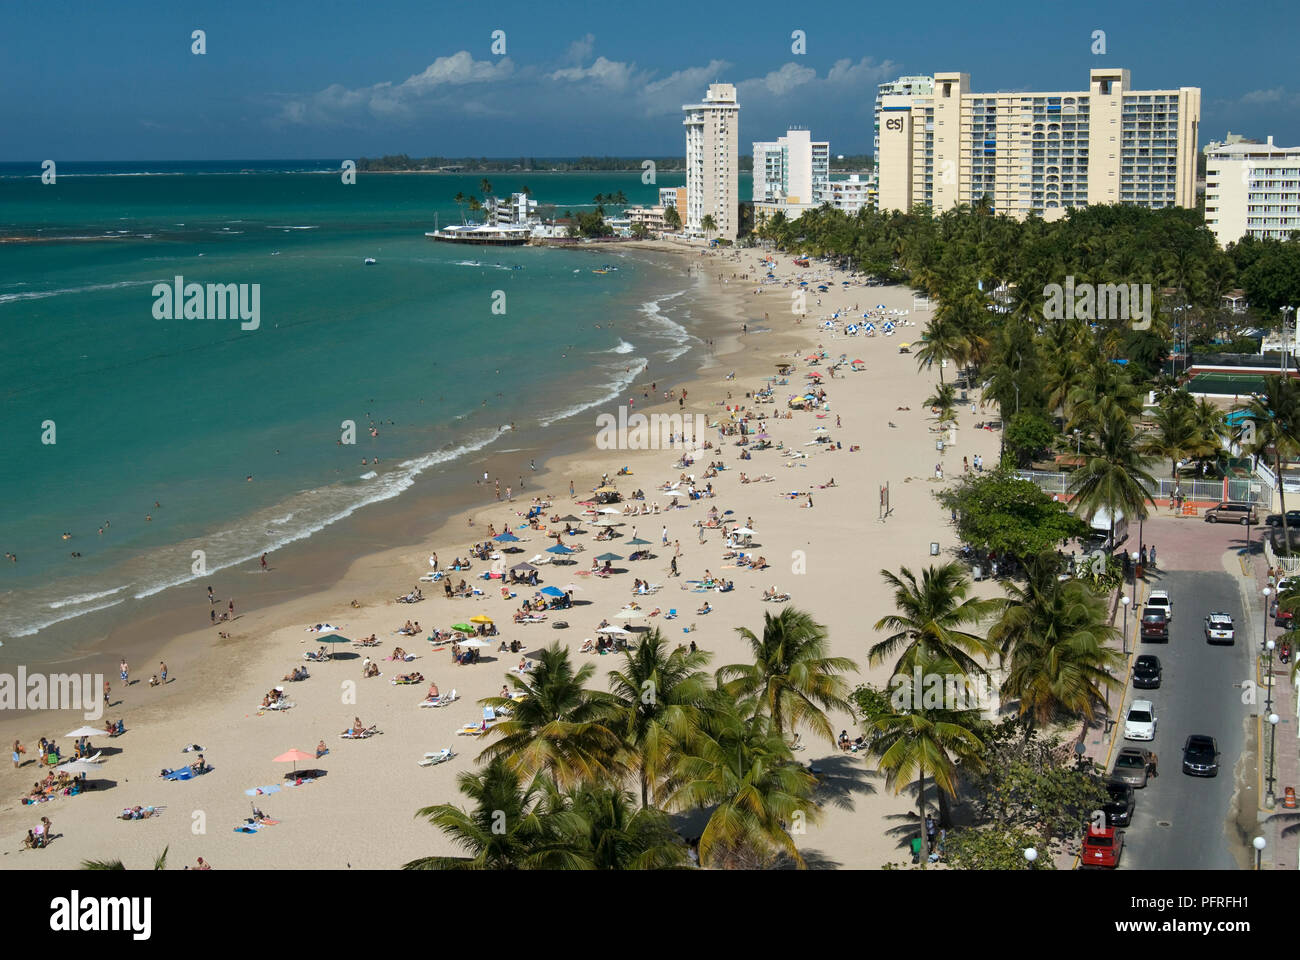 Puerto Rico, view of Isla Verde beach Stock Photo